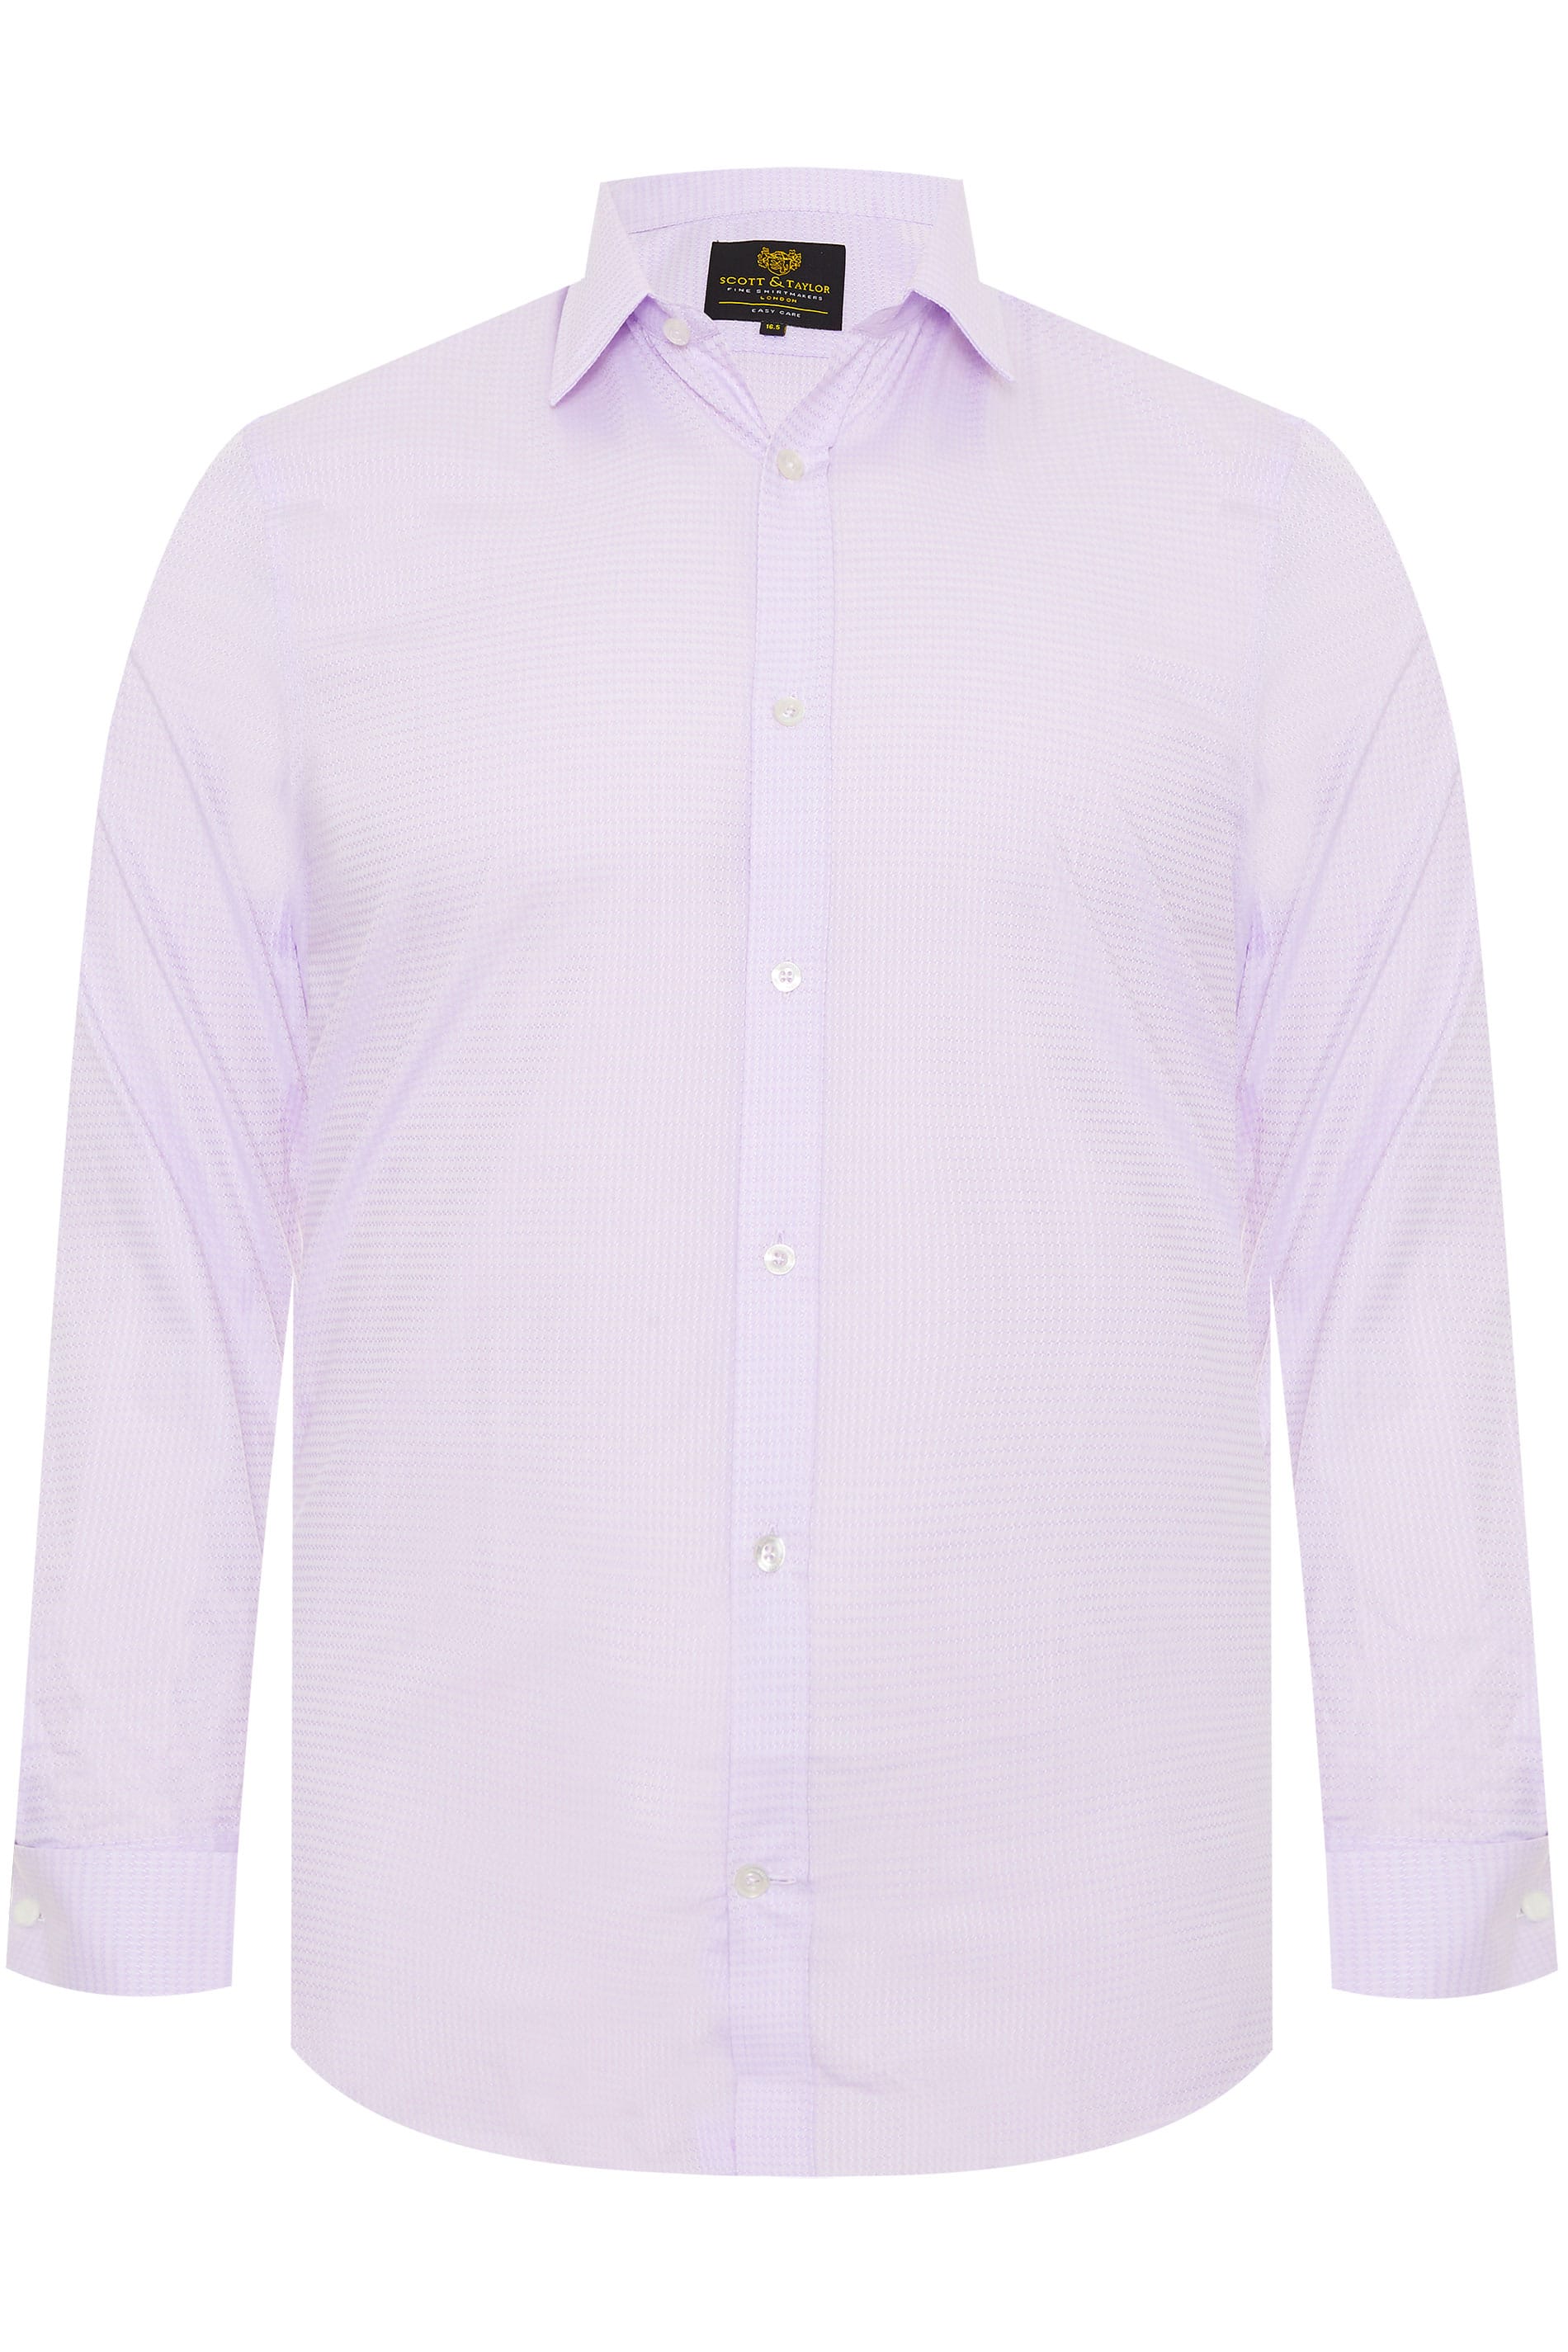 SCOTT & TAYLOR Light Purple Textured Shirt_6de6.jpg